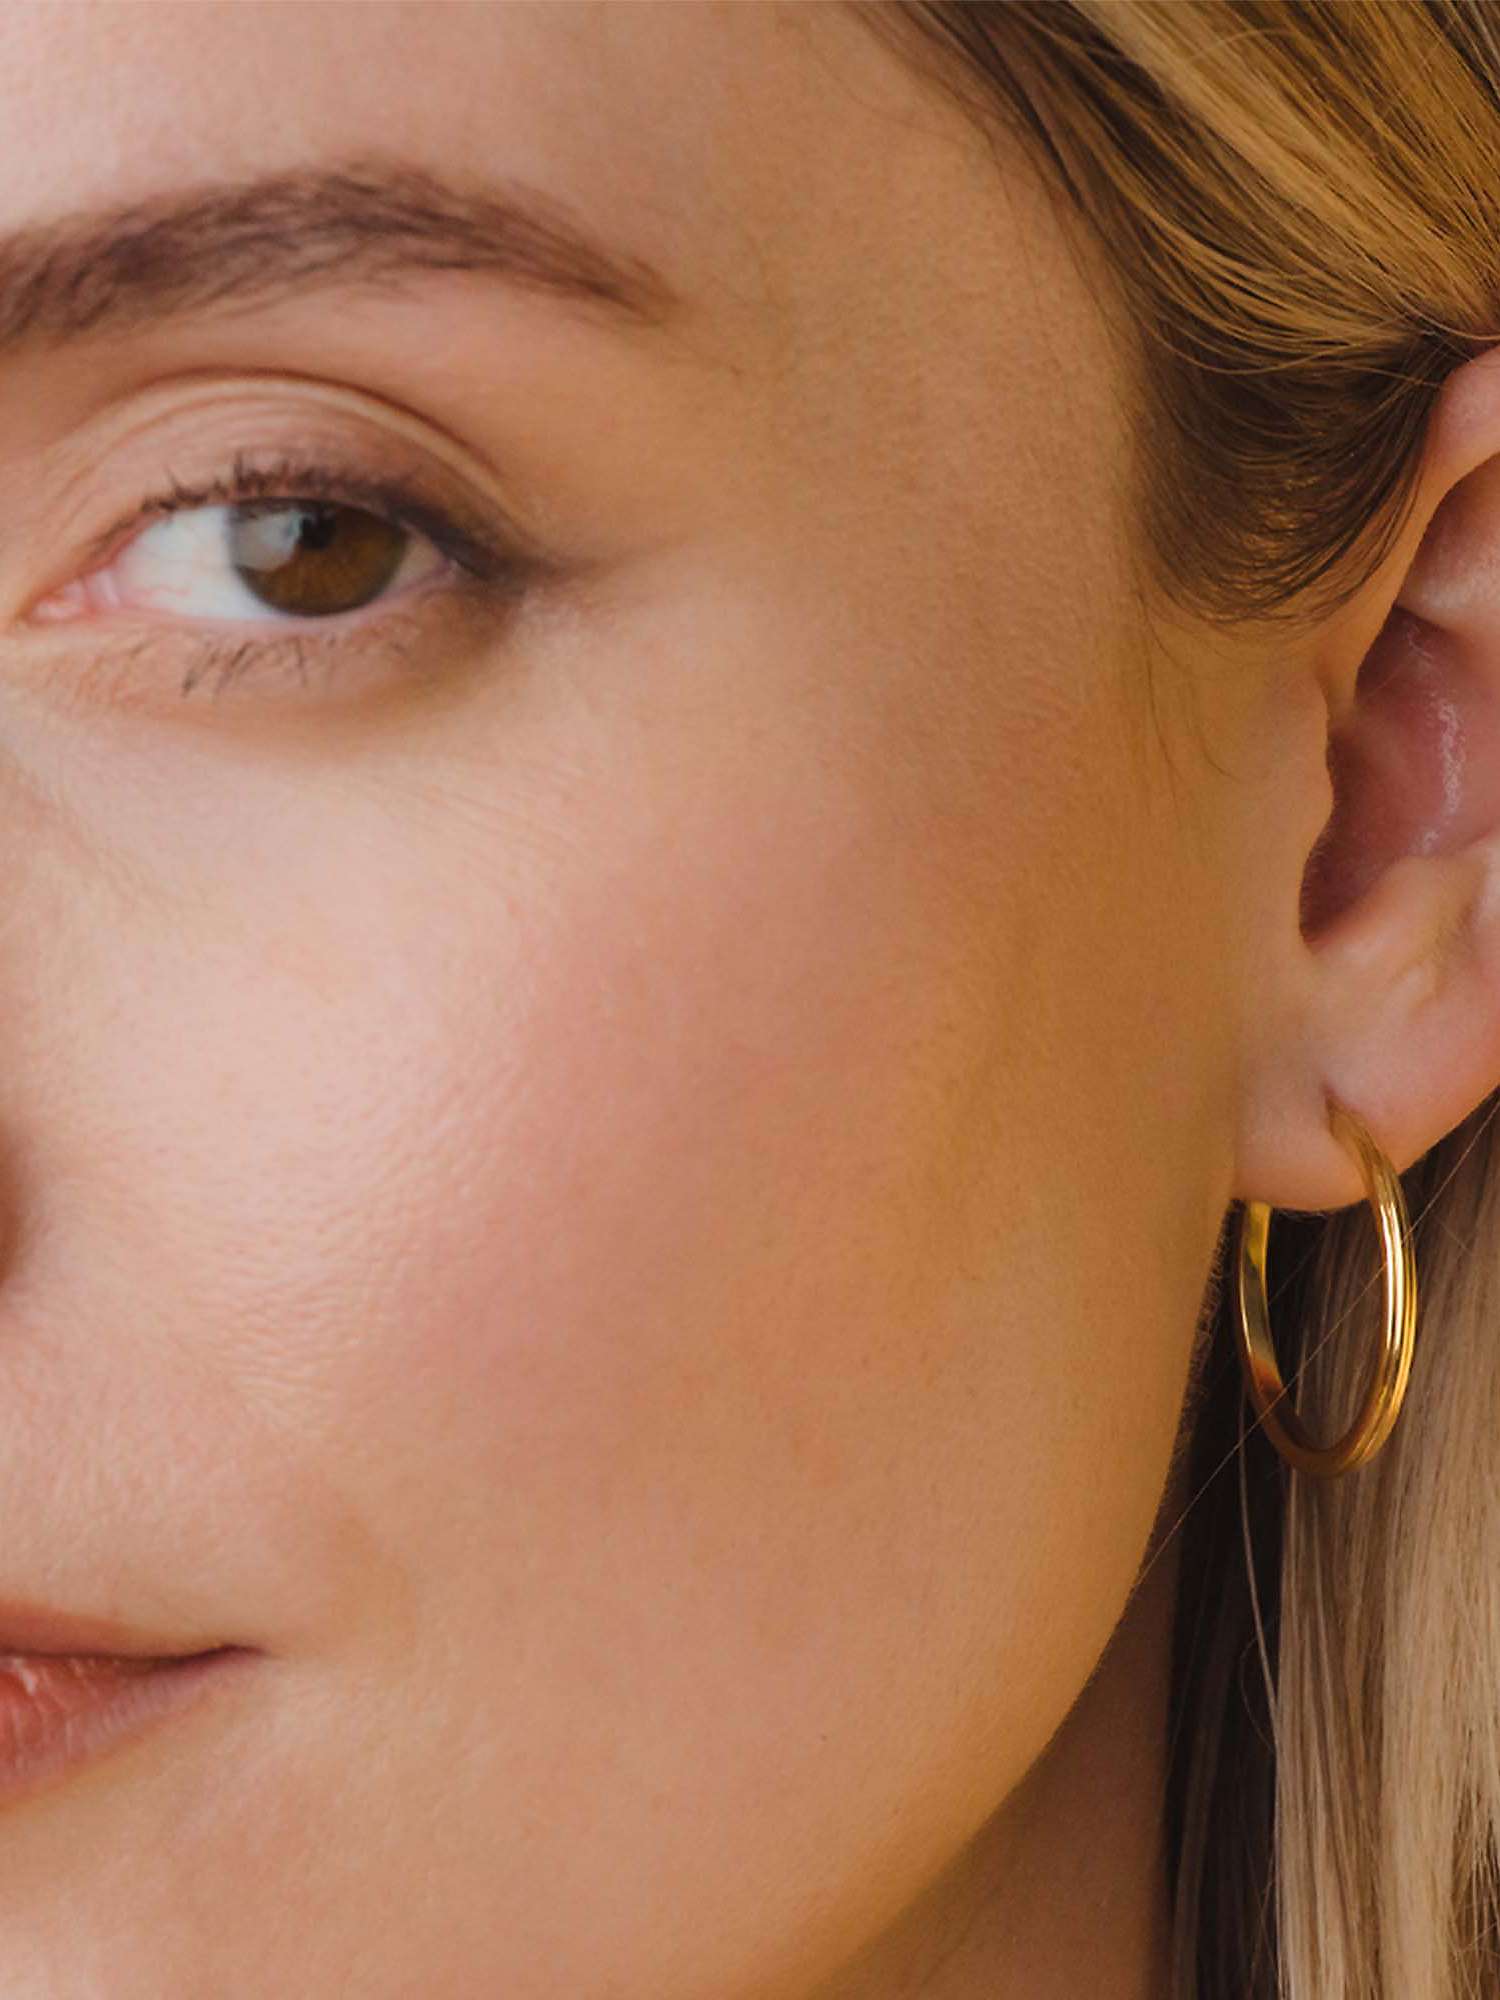 Buy Astley Clarke Textured Hoop Earrings, Gold Online at johnlewis.com